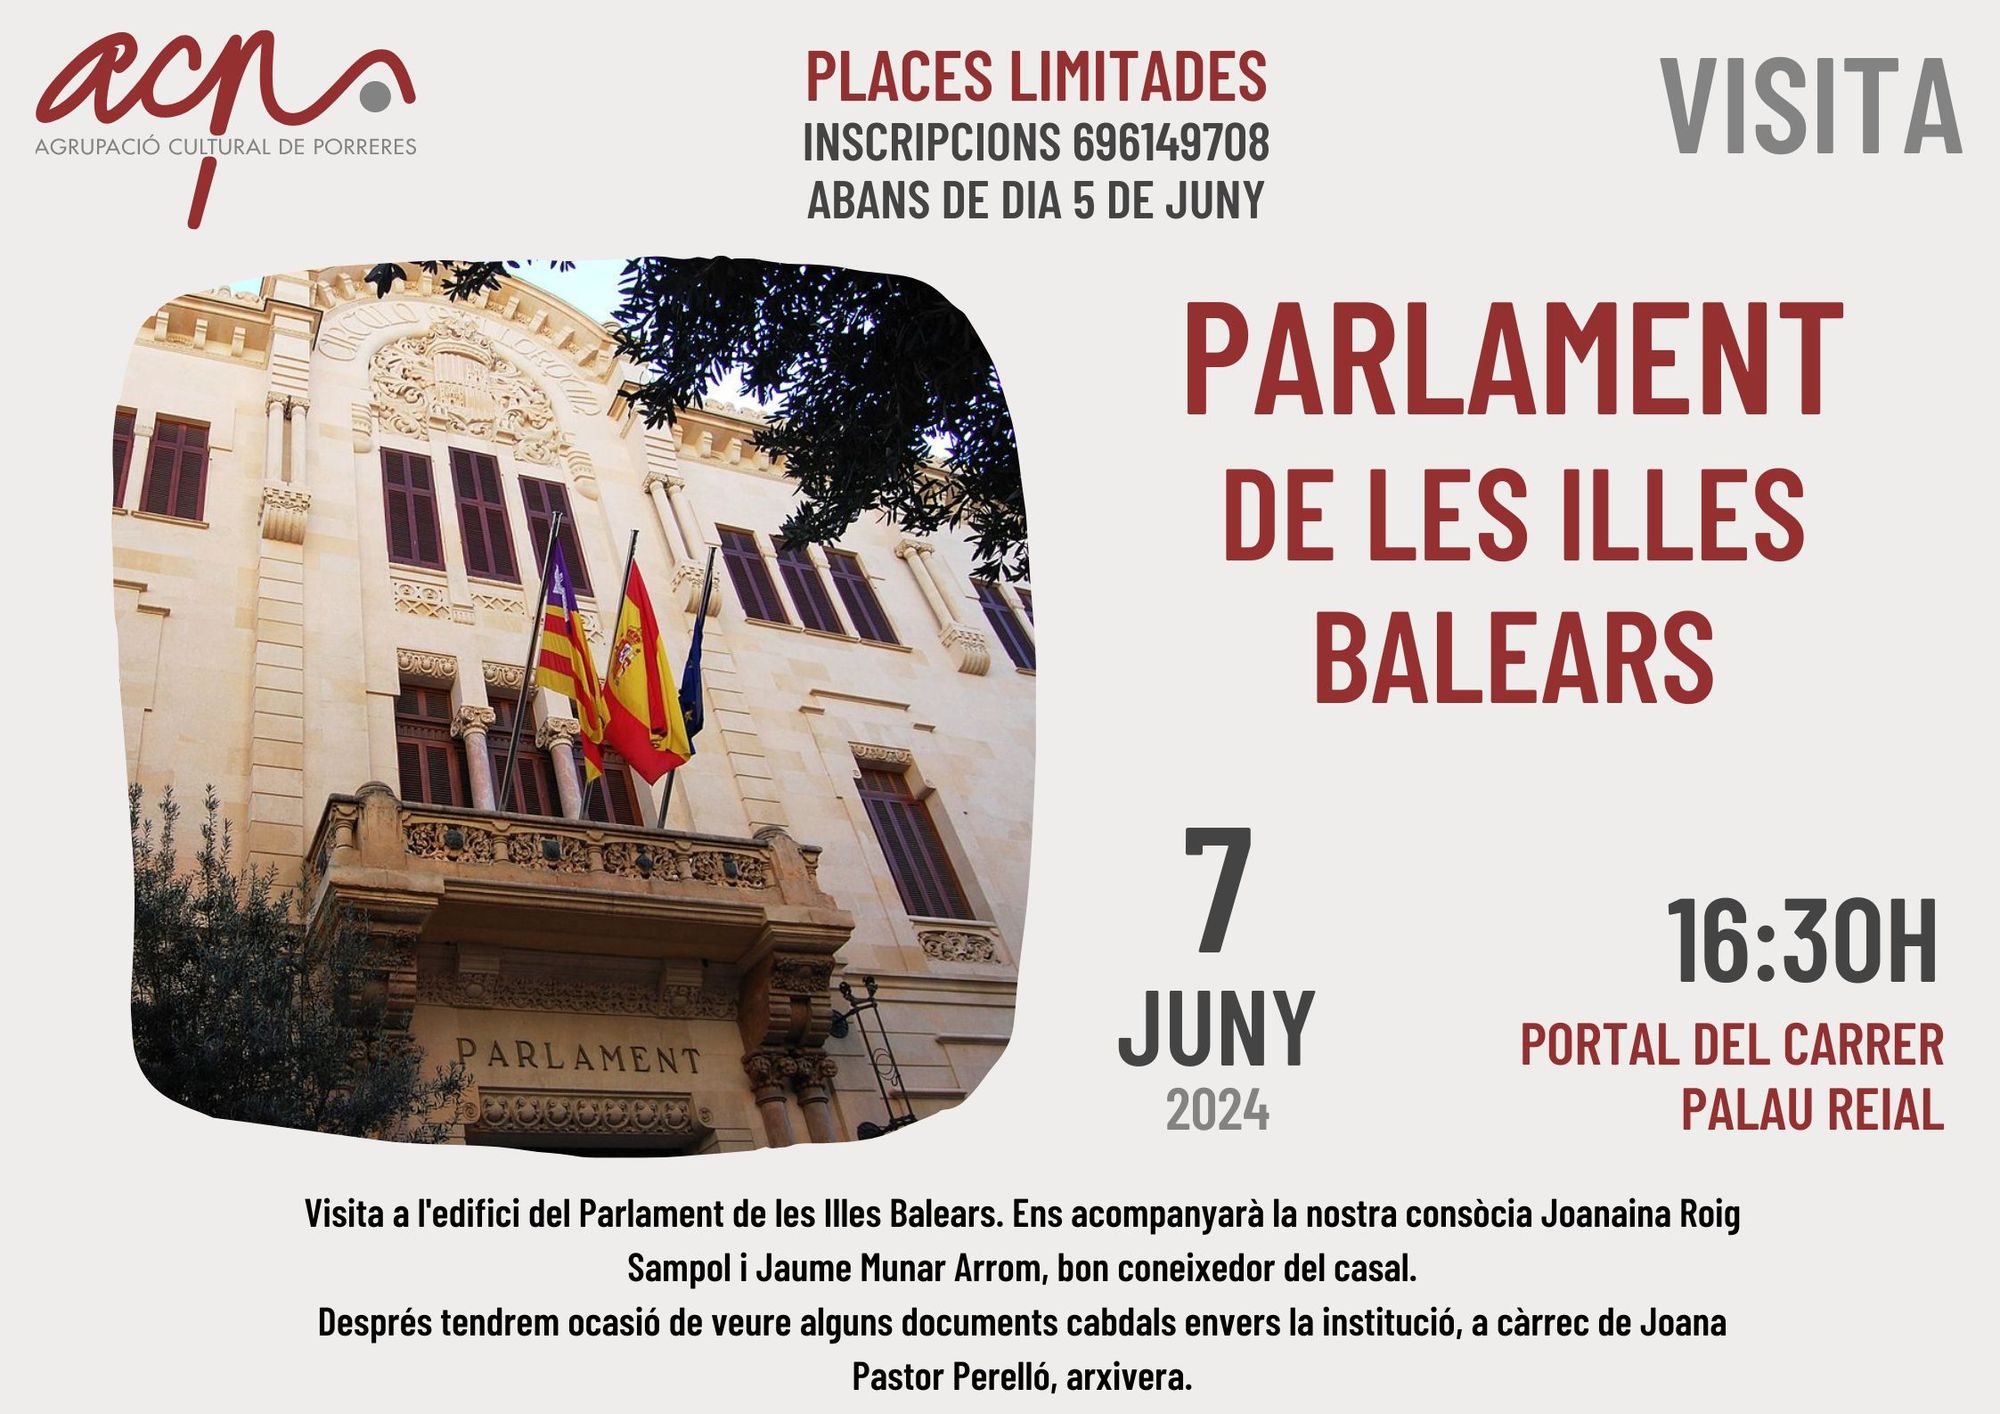 Visita cultural al Palment de les Illes Balears